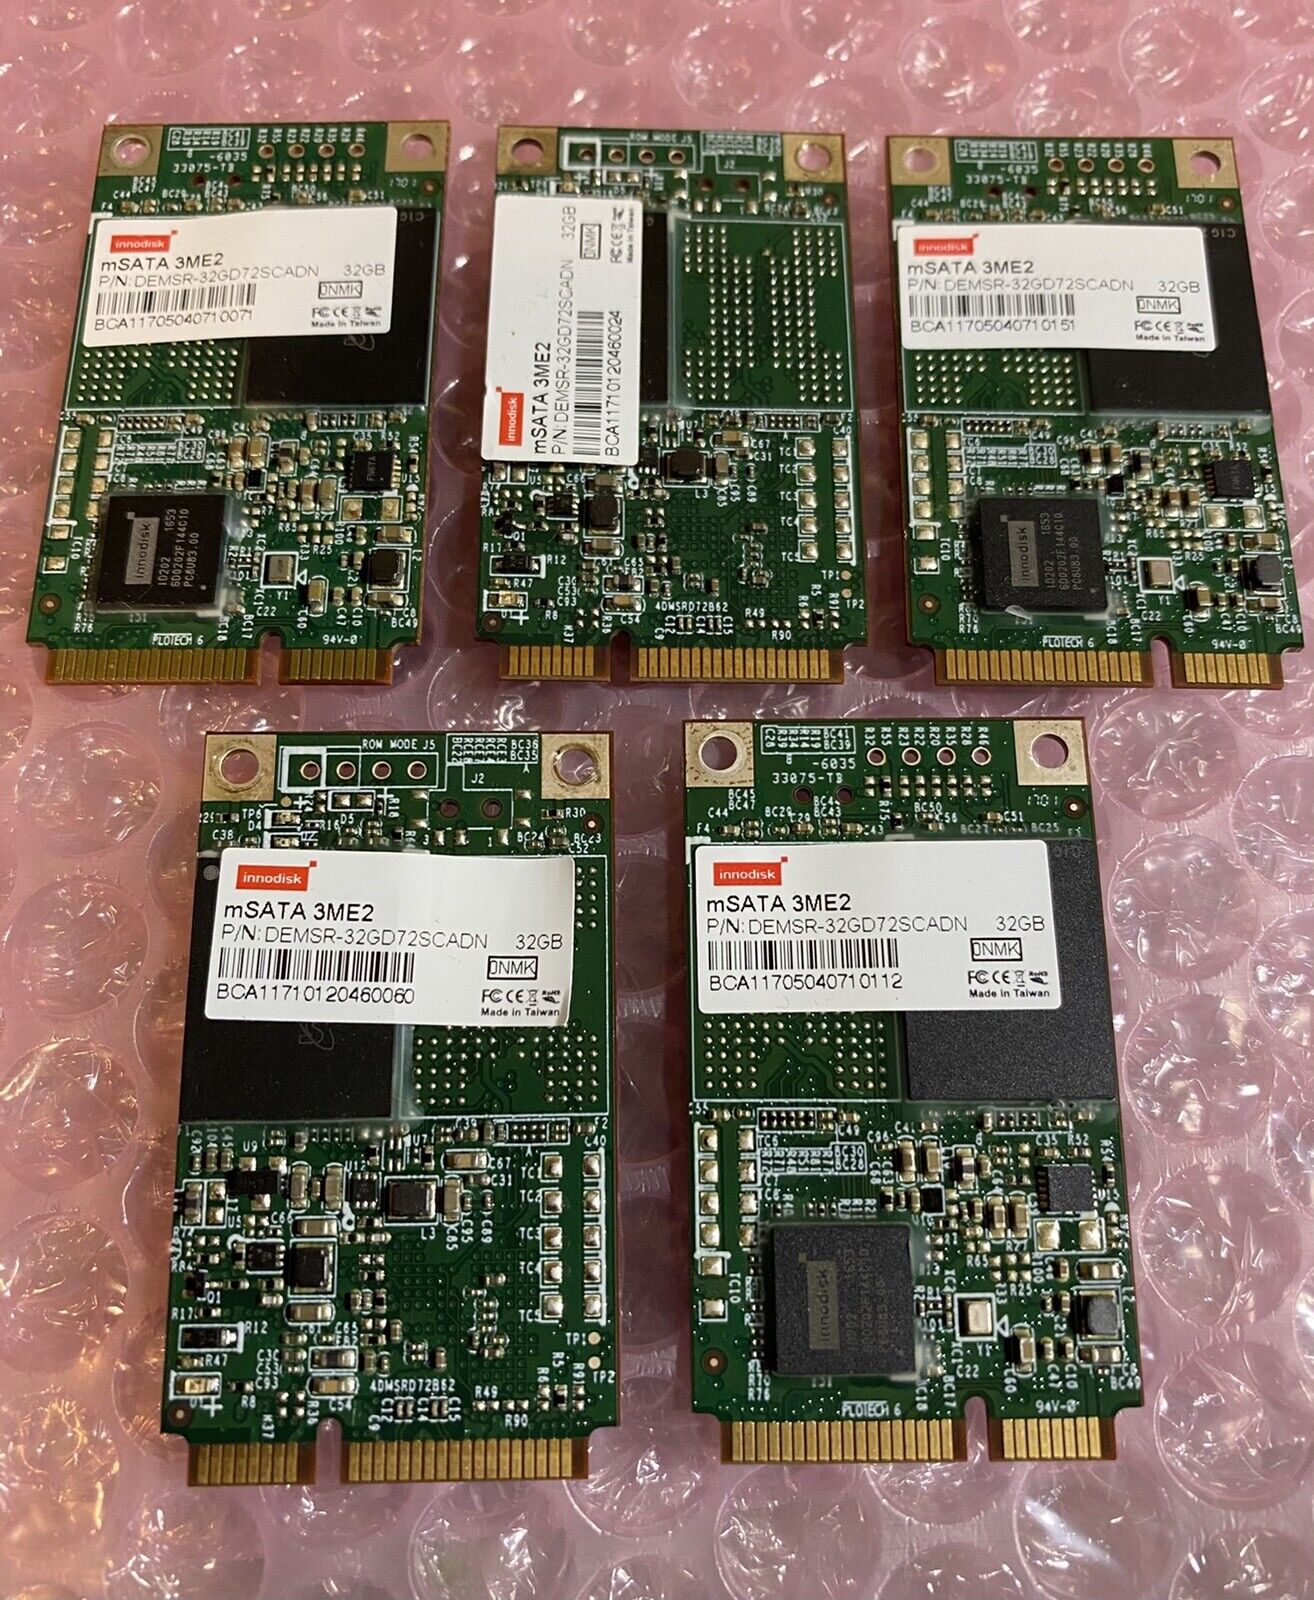 5 Lot Innodisk mSATA 32GB 3ME2 SSD (DEMSR-32GD725CADN) Solid State Drives